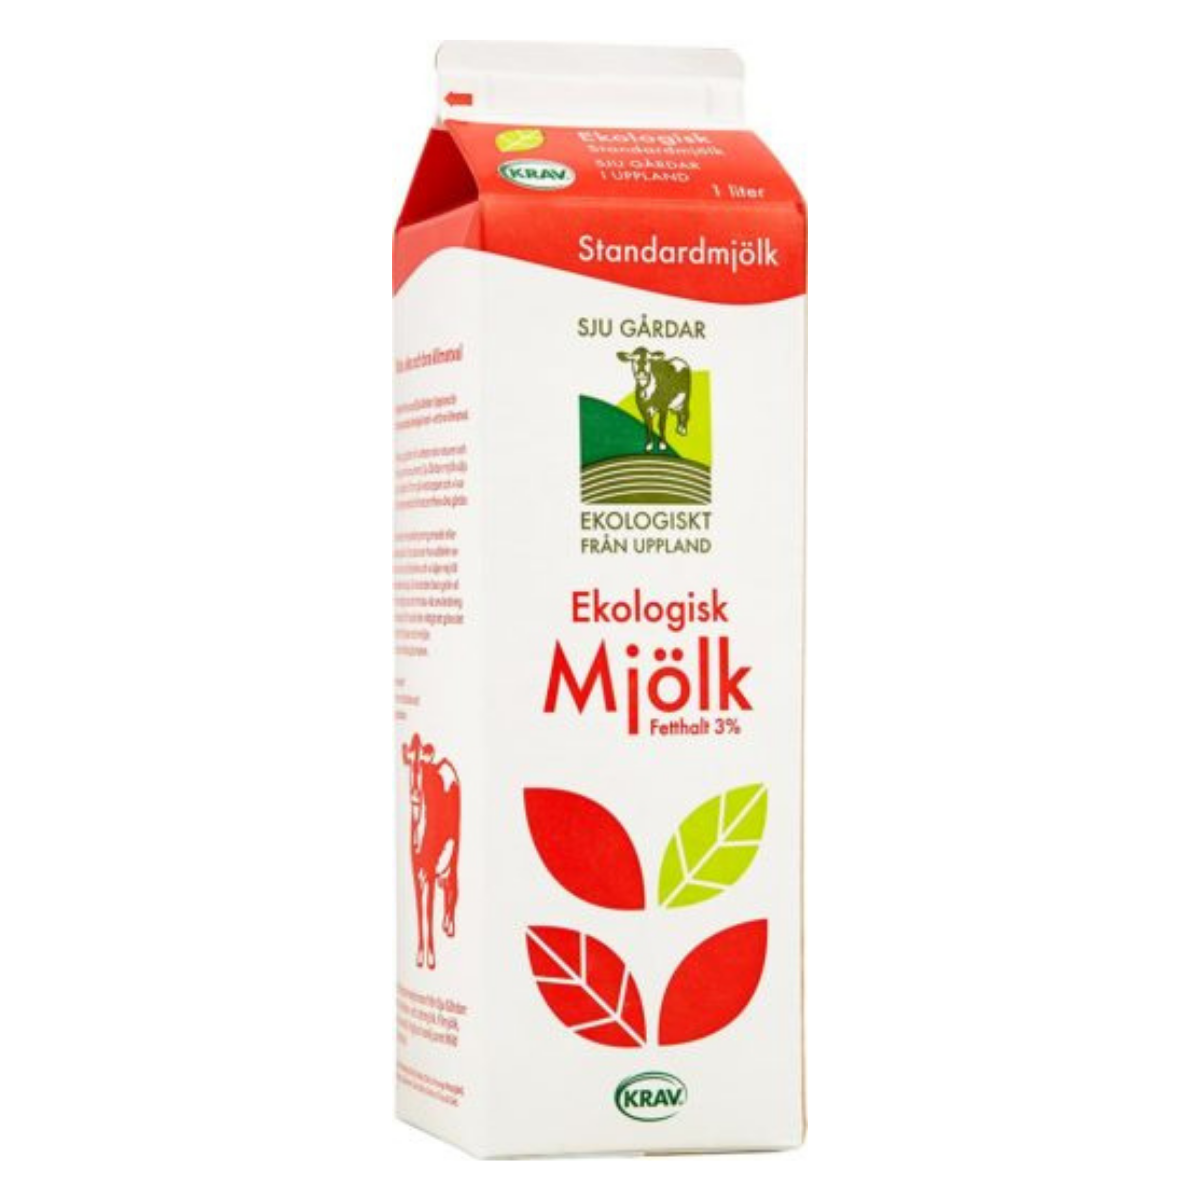 Sju Gårdar's Ekologisk mjölk 3%'